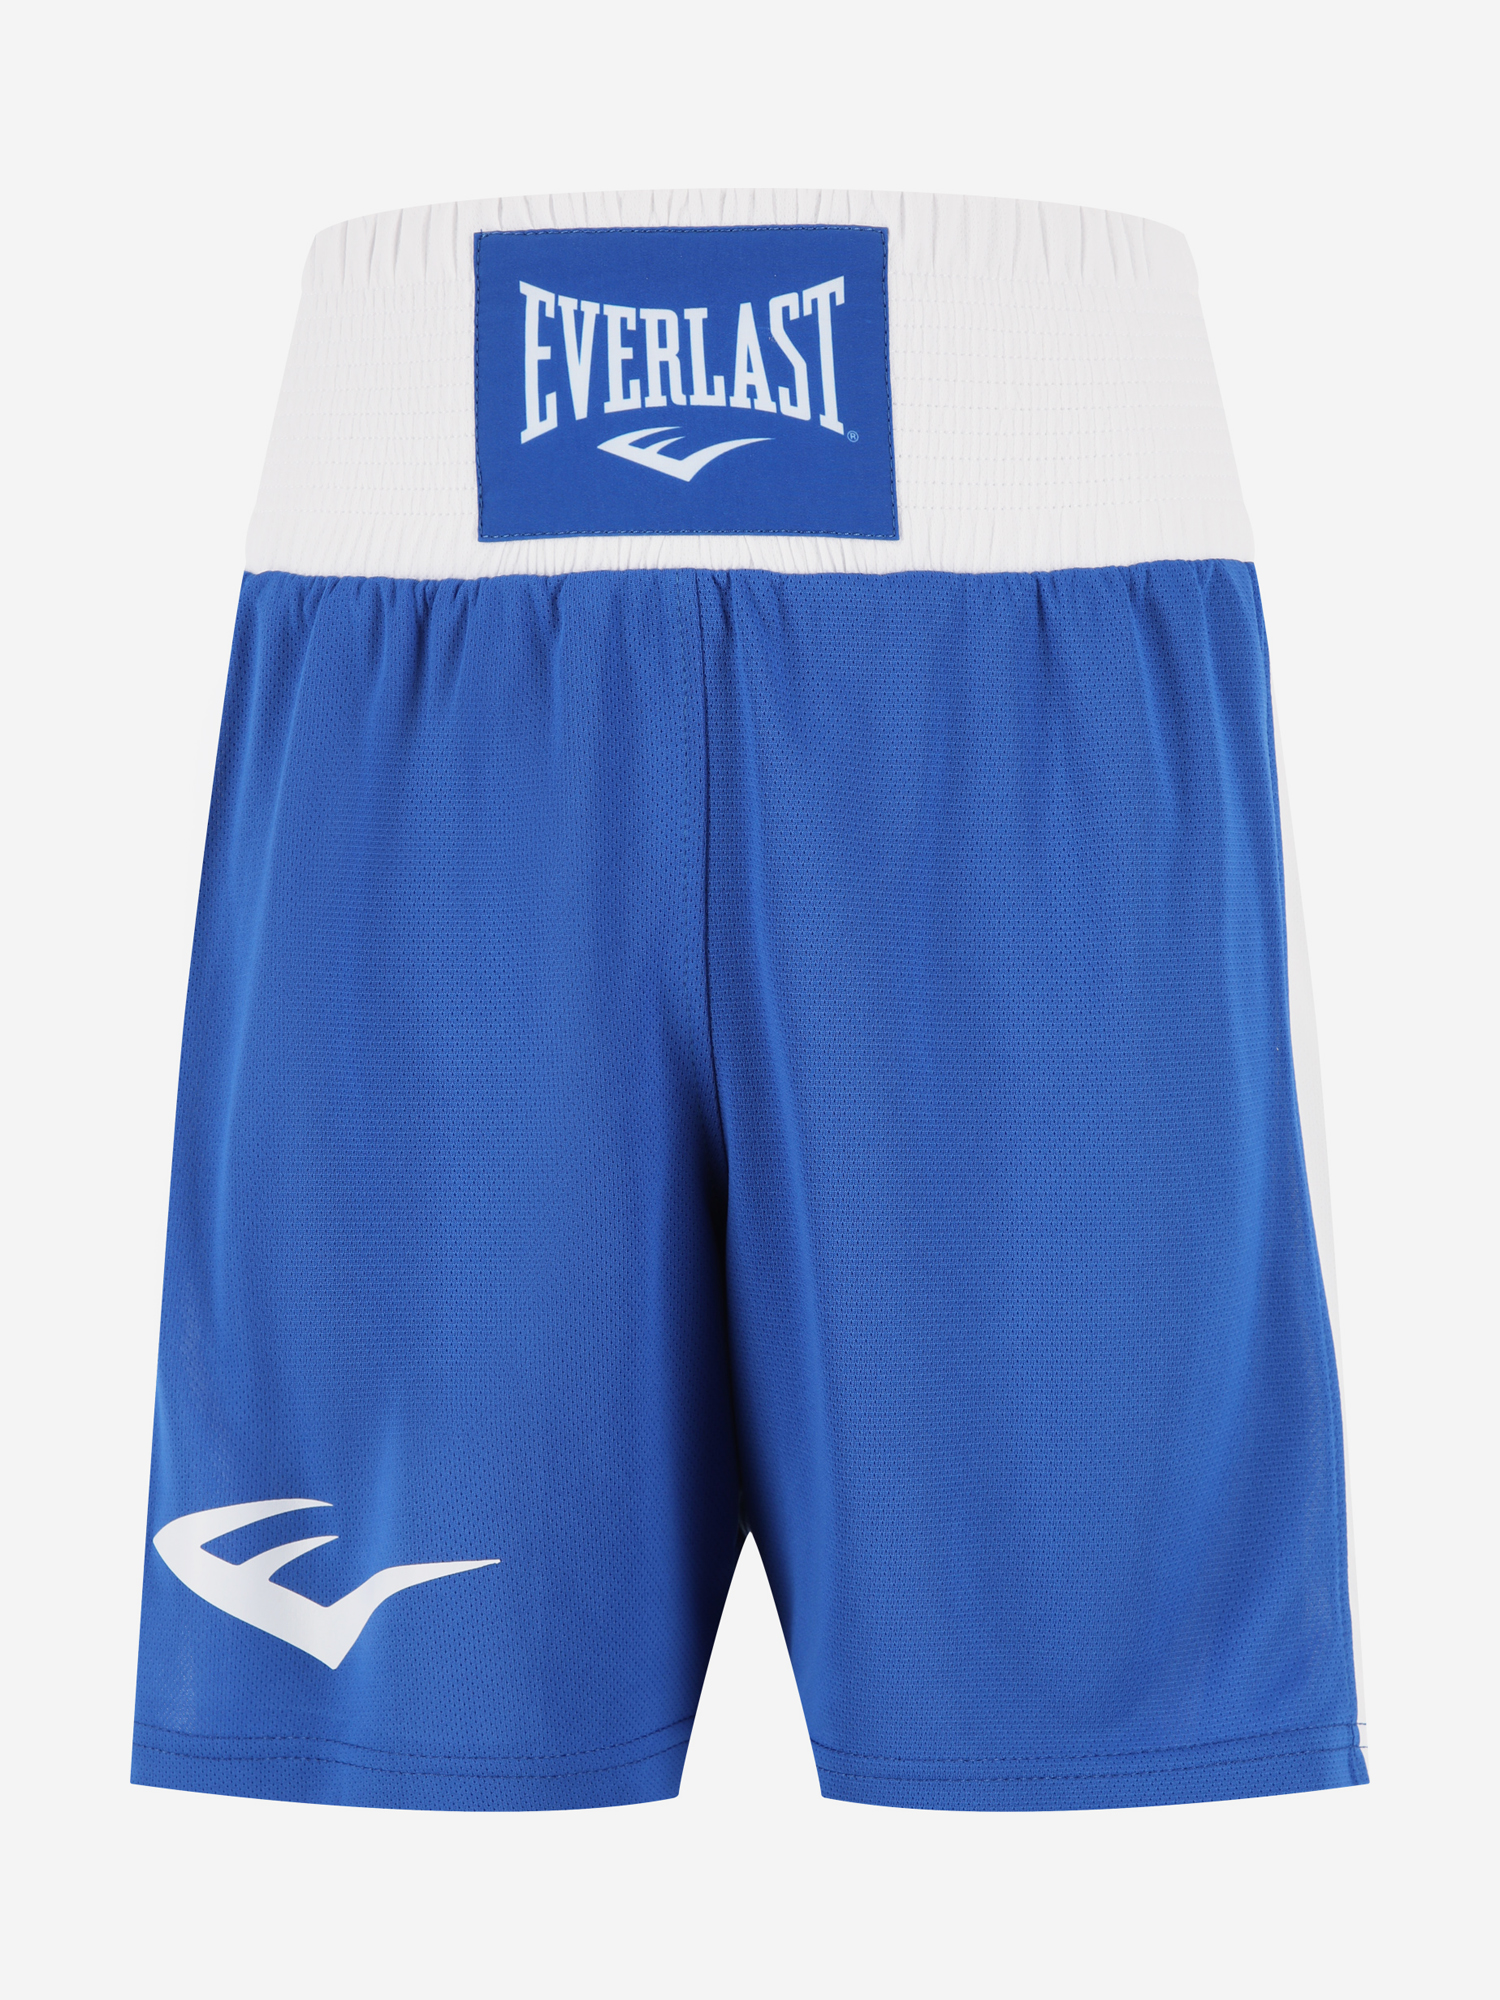 Шорты для бокса детские Everlast Elite, Синий перчатки тренировочные everlast spark 10oz бел гео